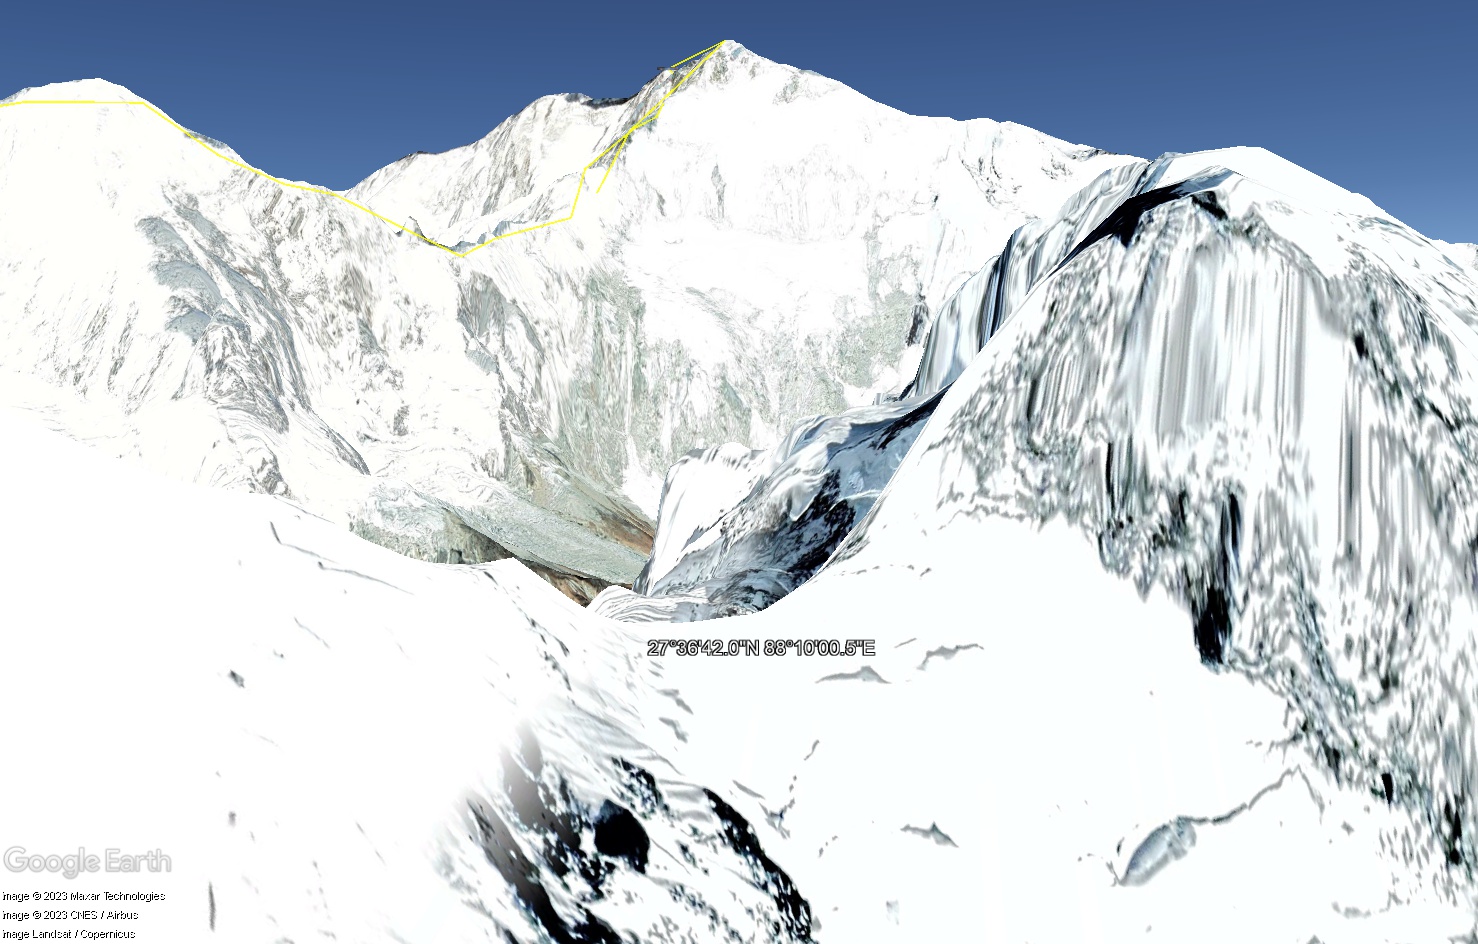 Les 14 sommets de plus de 8 000 mètres - Page 3 Tsge3964